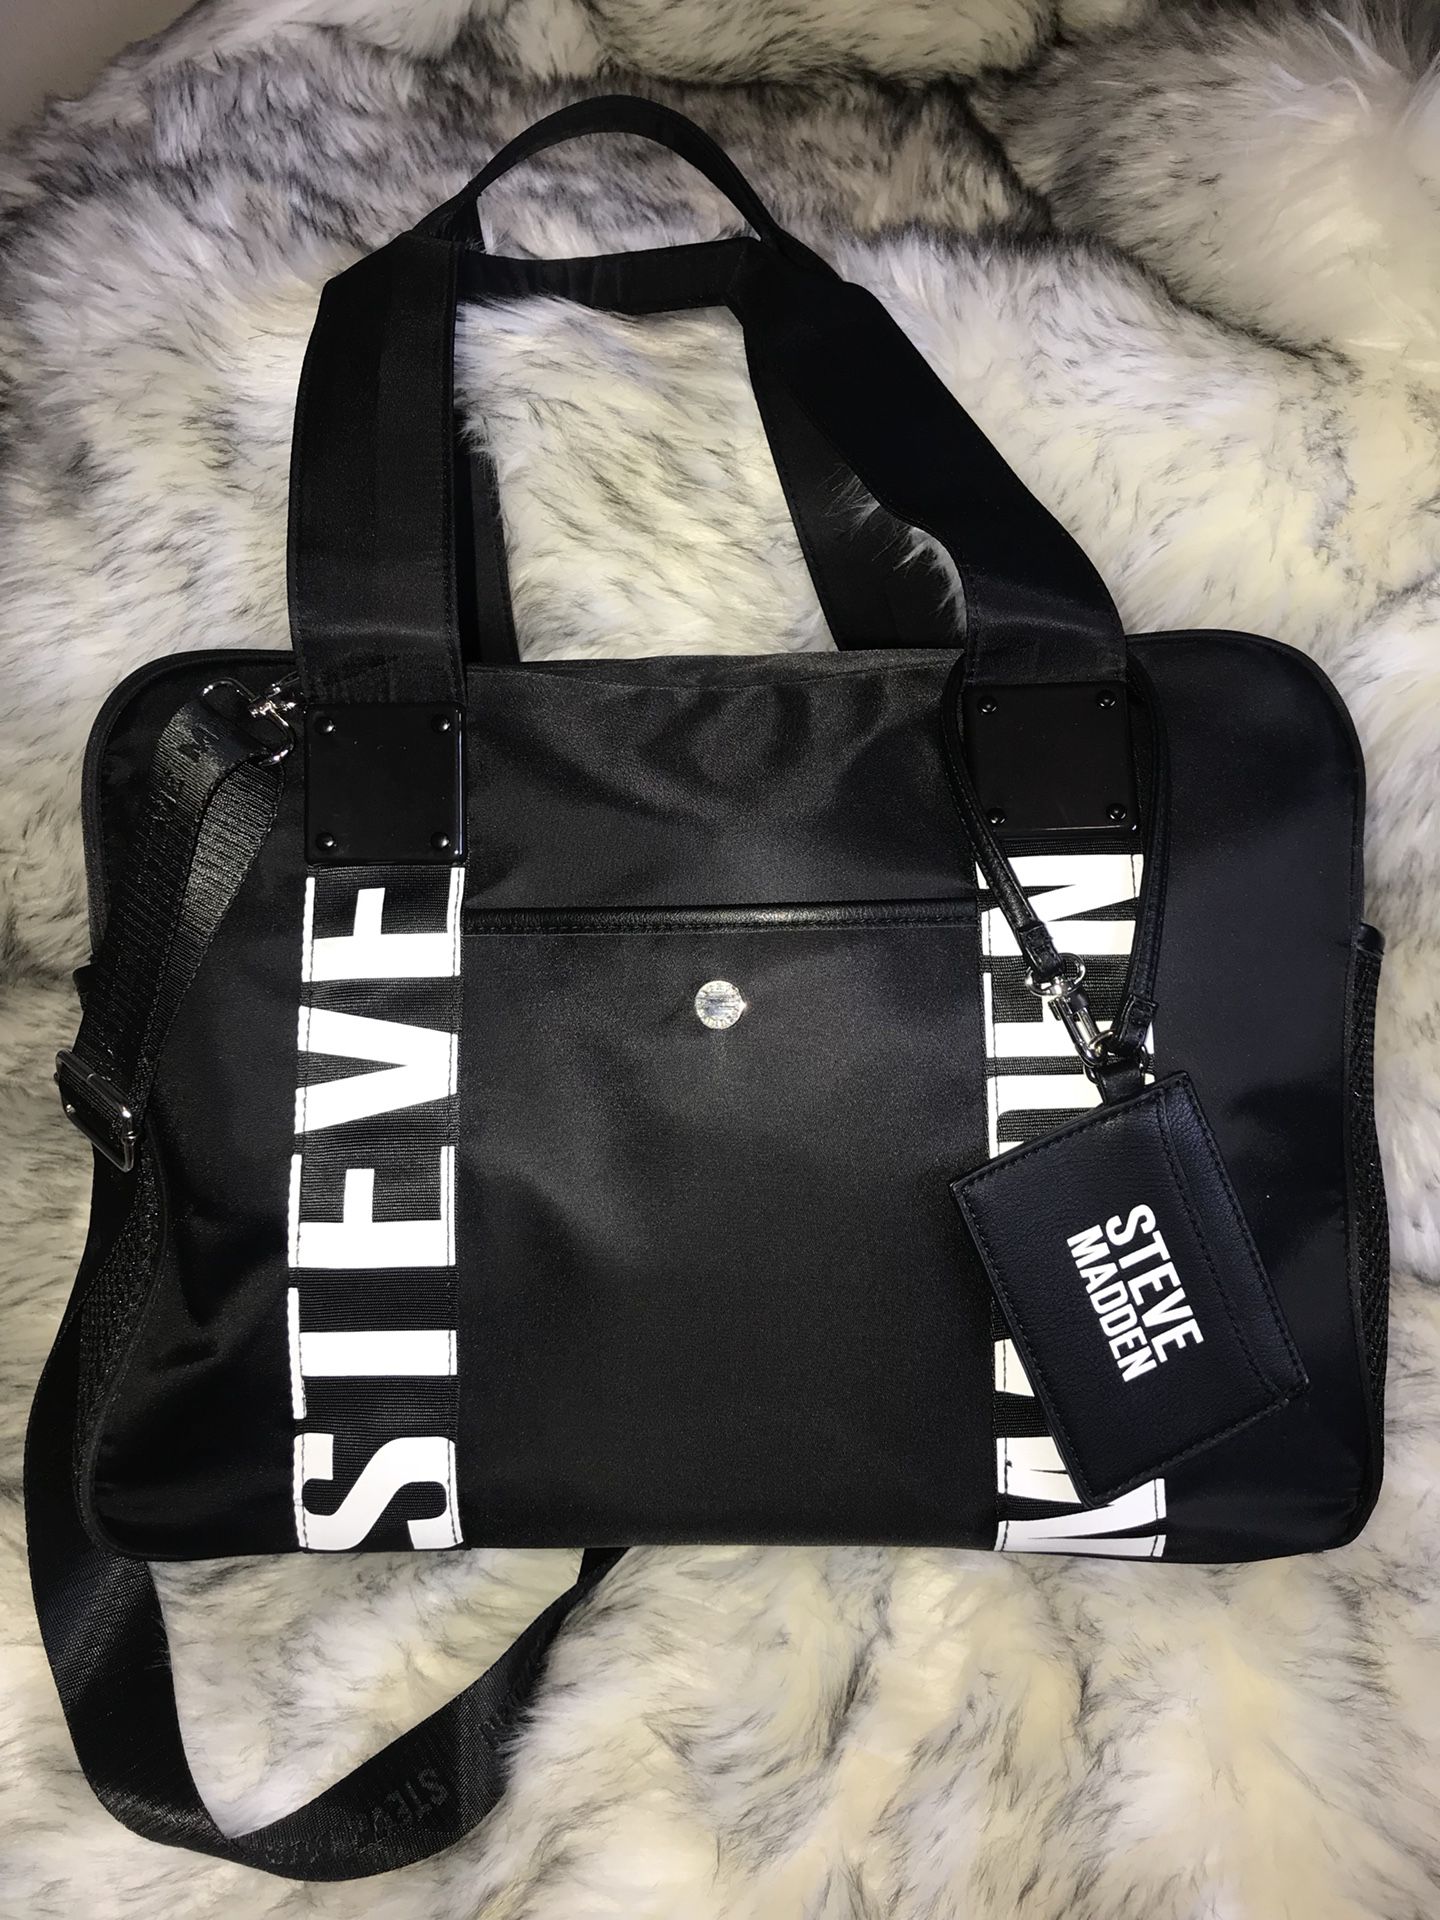 Steve Madden Travel Duffle Bags